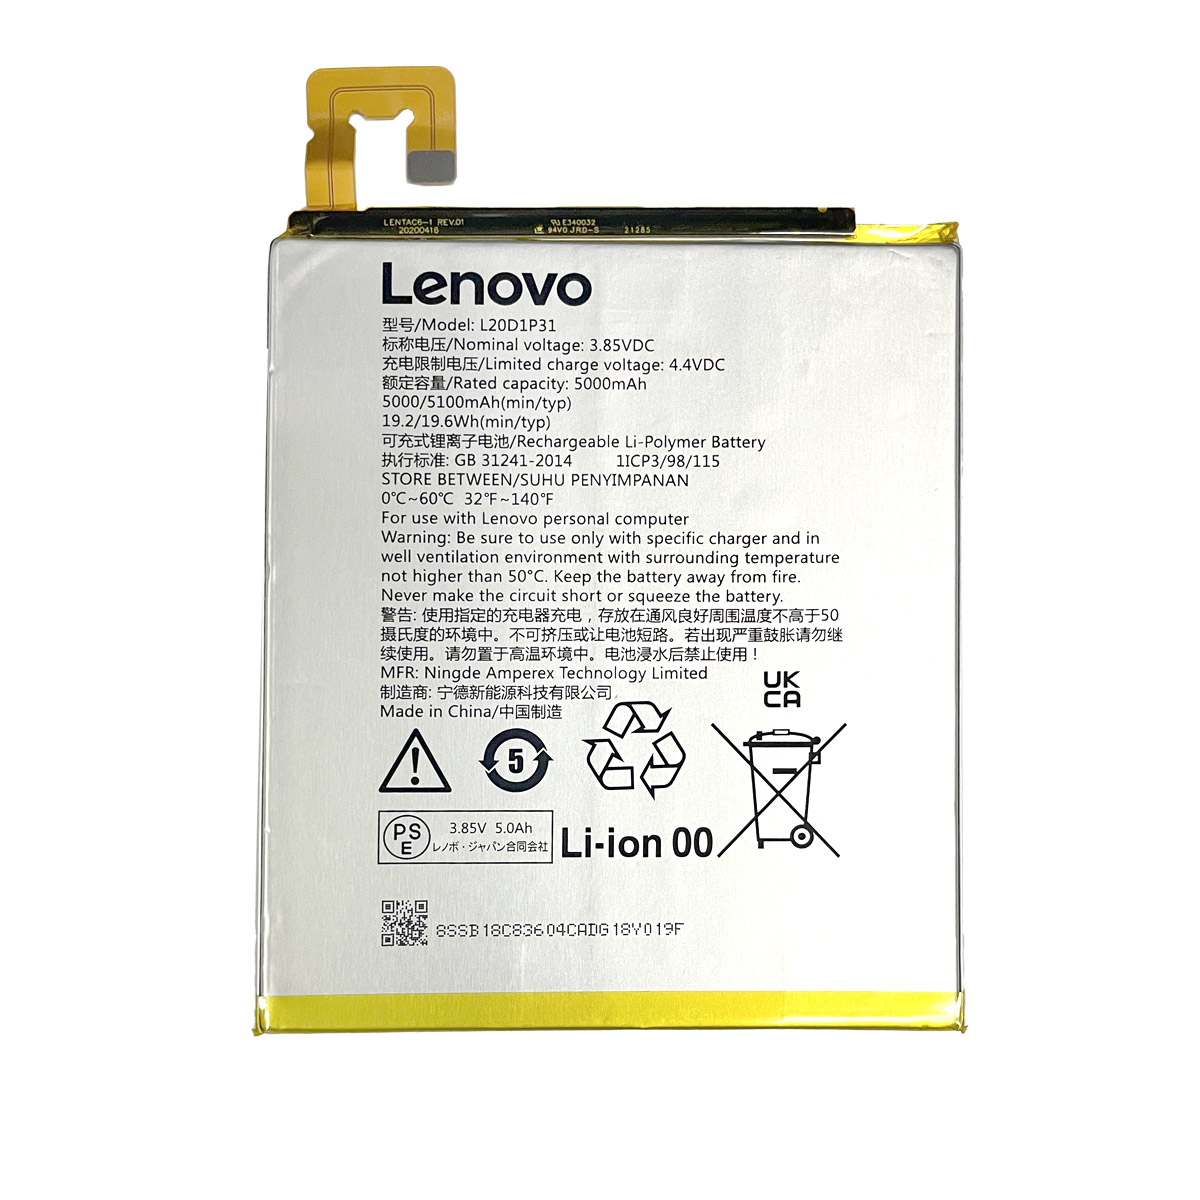 LENOVO-L20D1P31-Laptop Replacement Battery